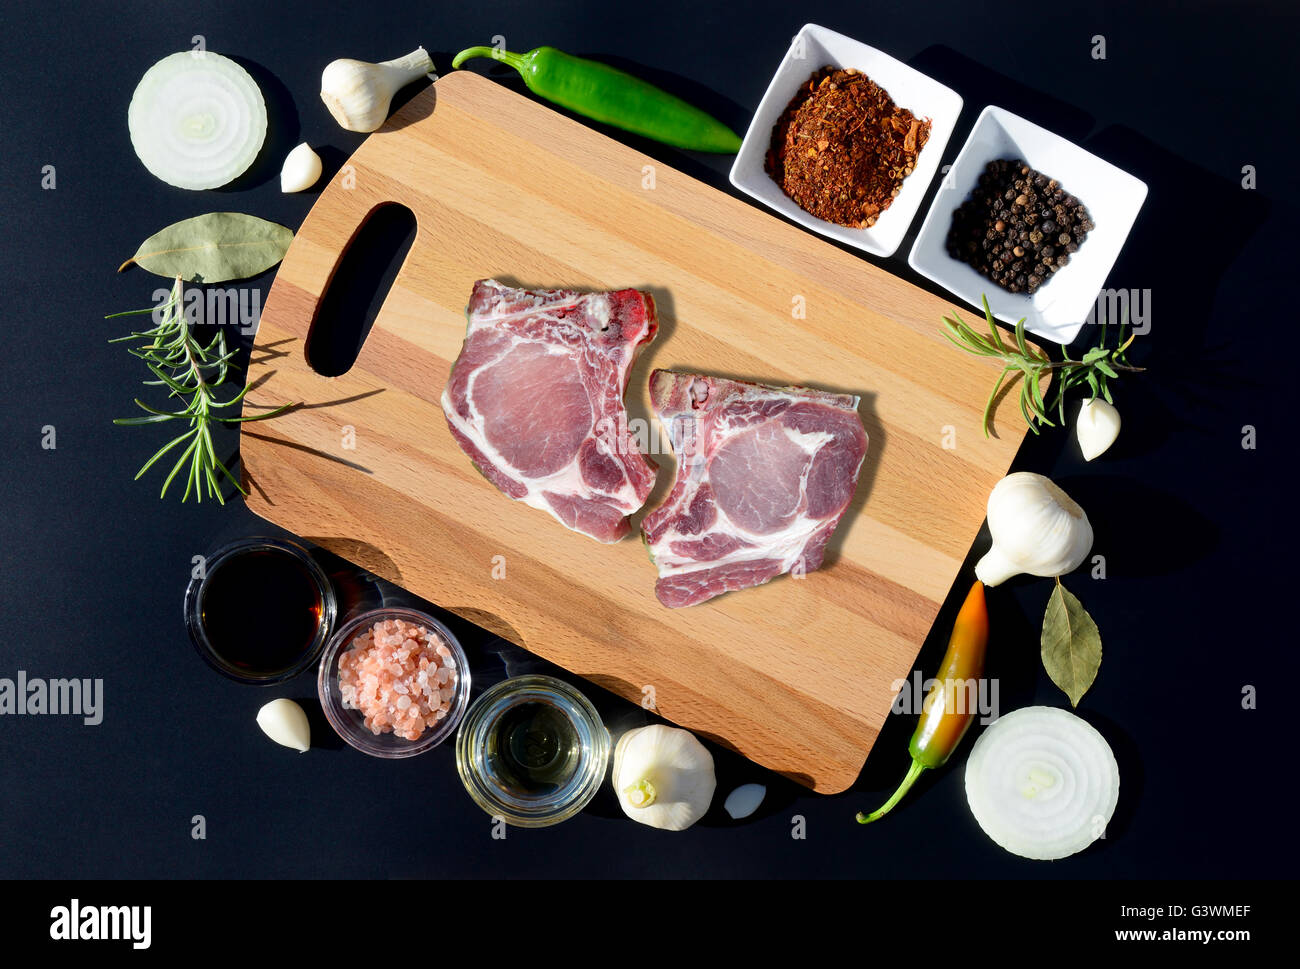 La carne de cerdo cruda sobre una tabla para cortar y pimienta, laurel, romero, cebolla, sal, aceite de oliva, salsa sobre un fondo negro Foto de stock